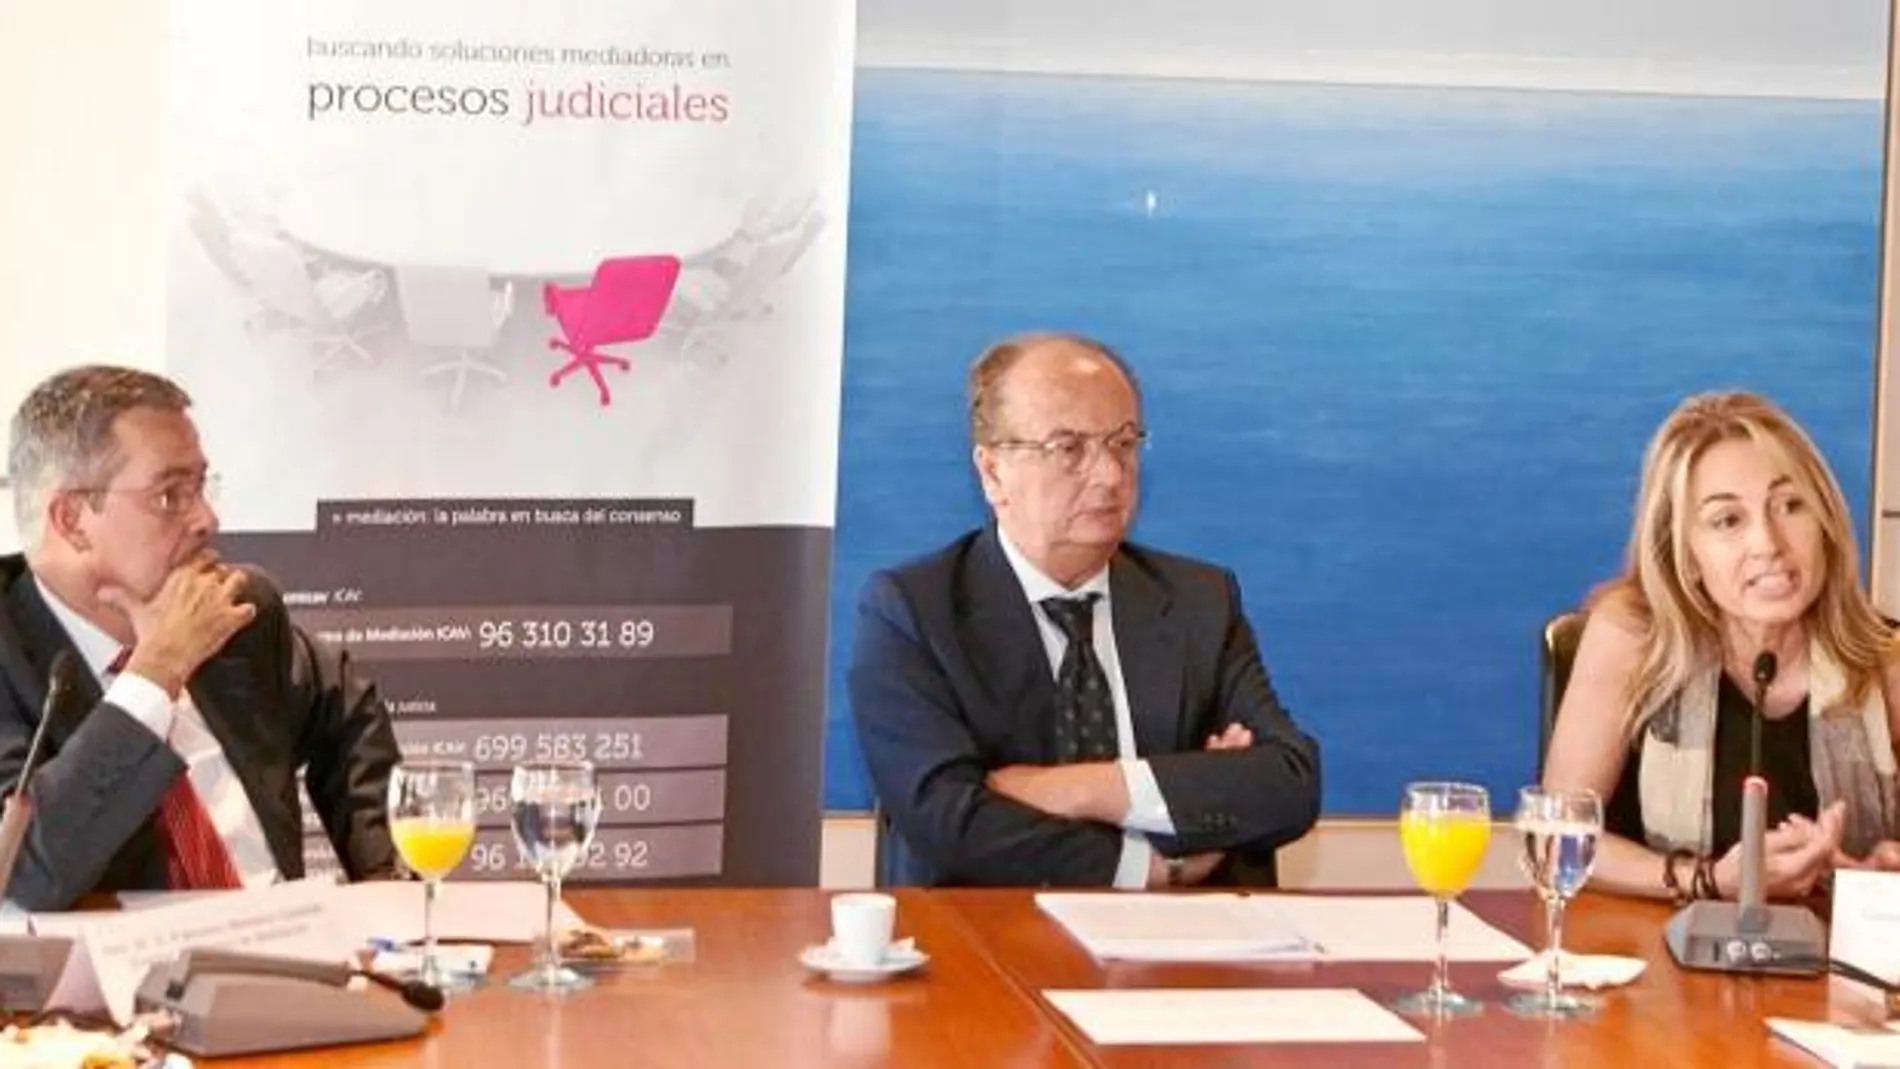 La mediación la alternativa al actual sistema judicial español